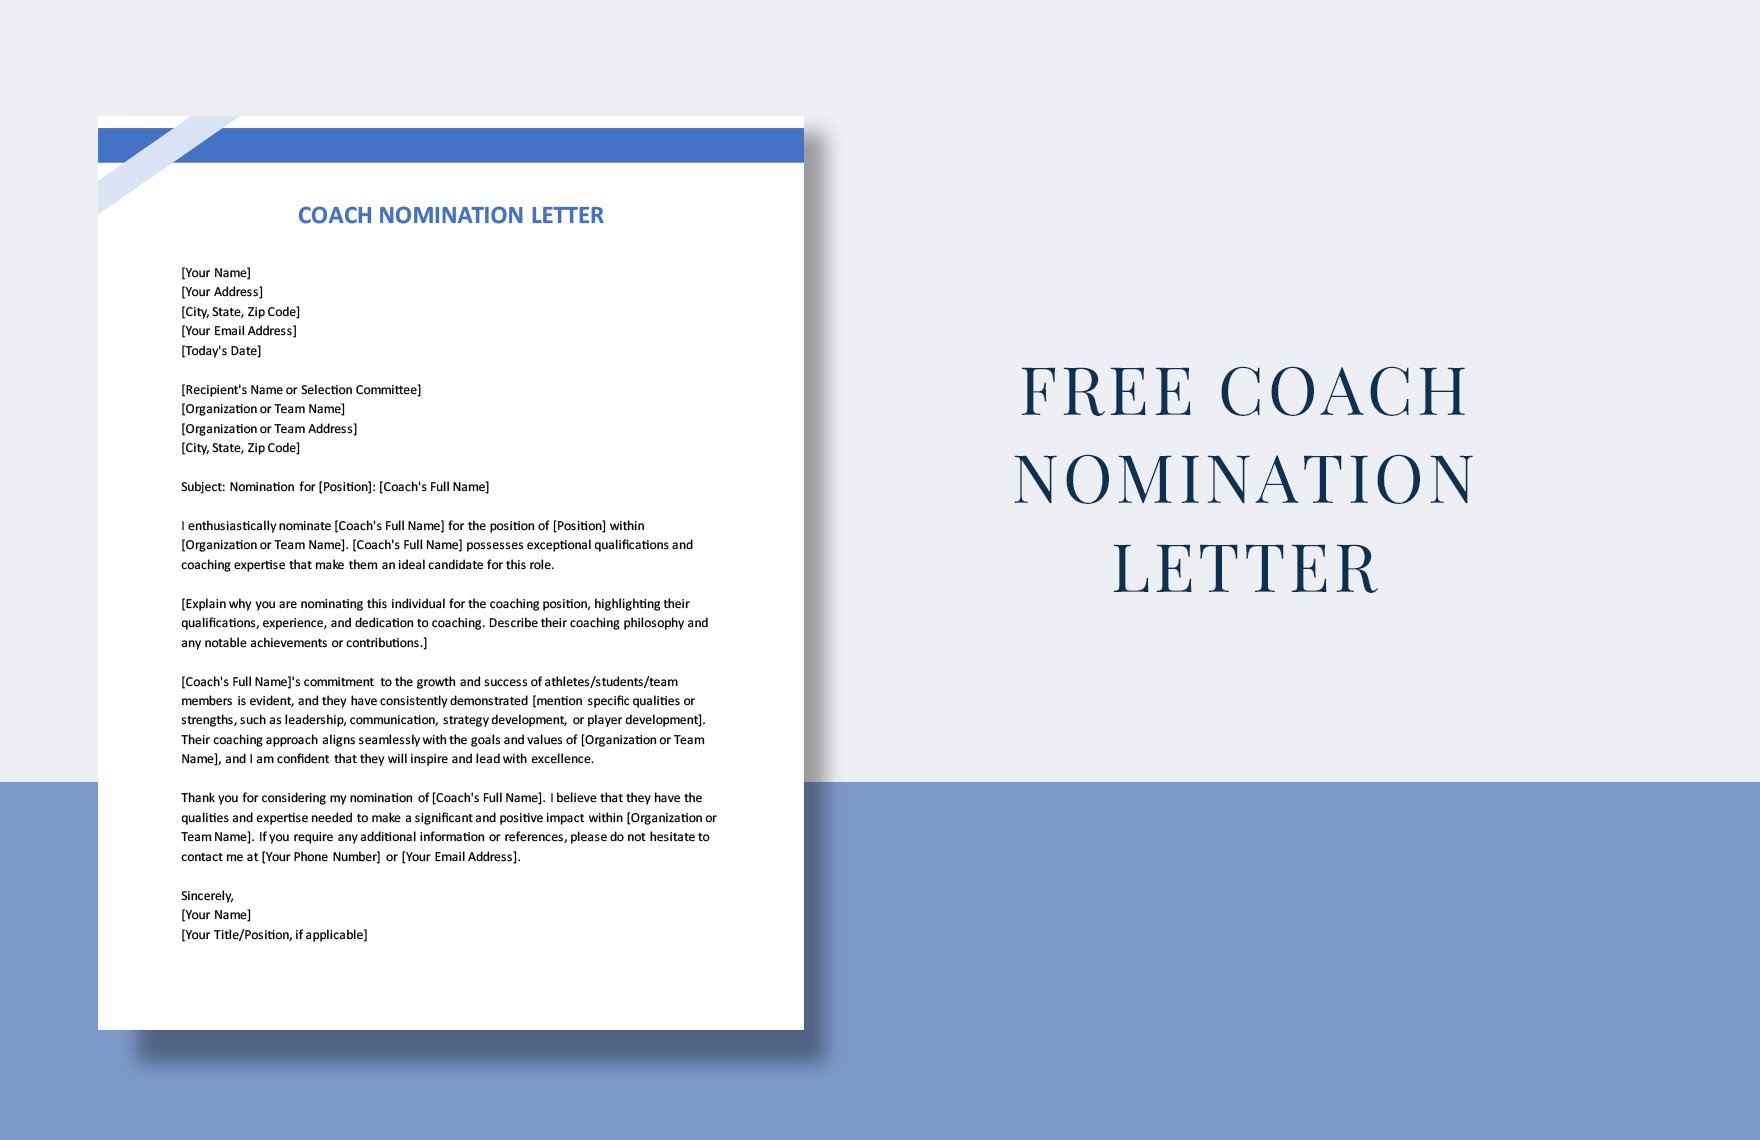 Coach Nomination Letter